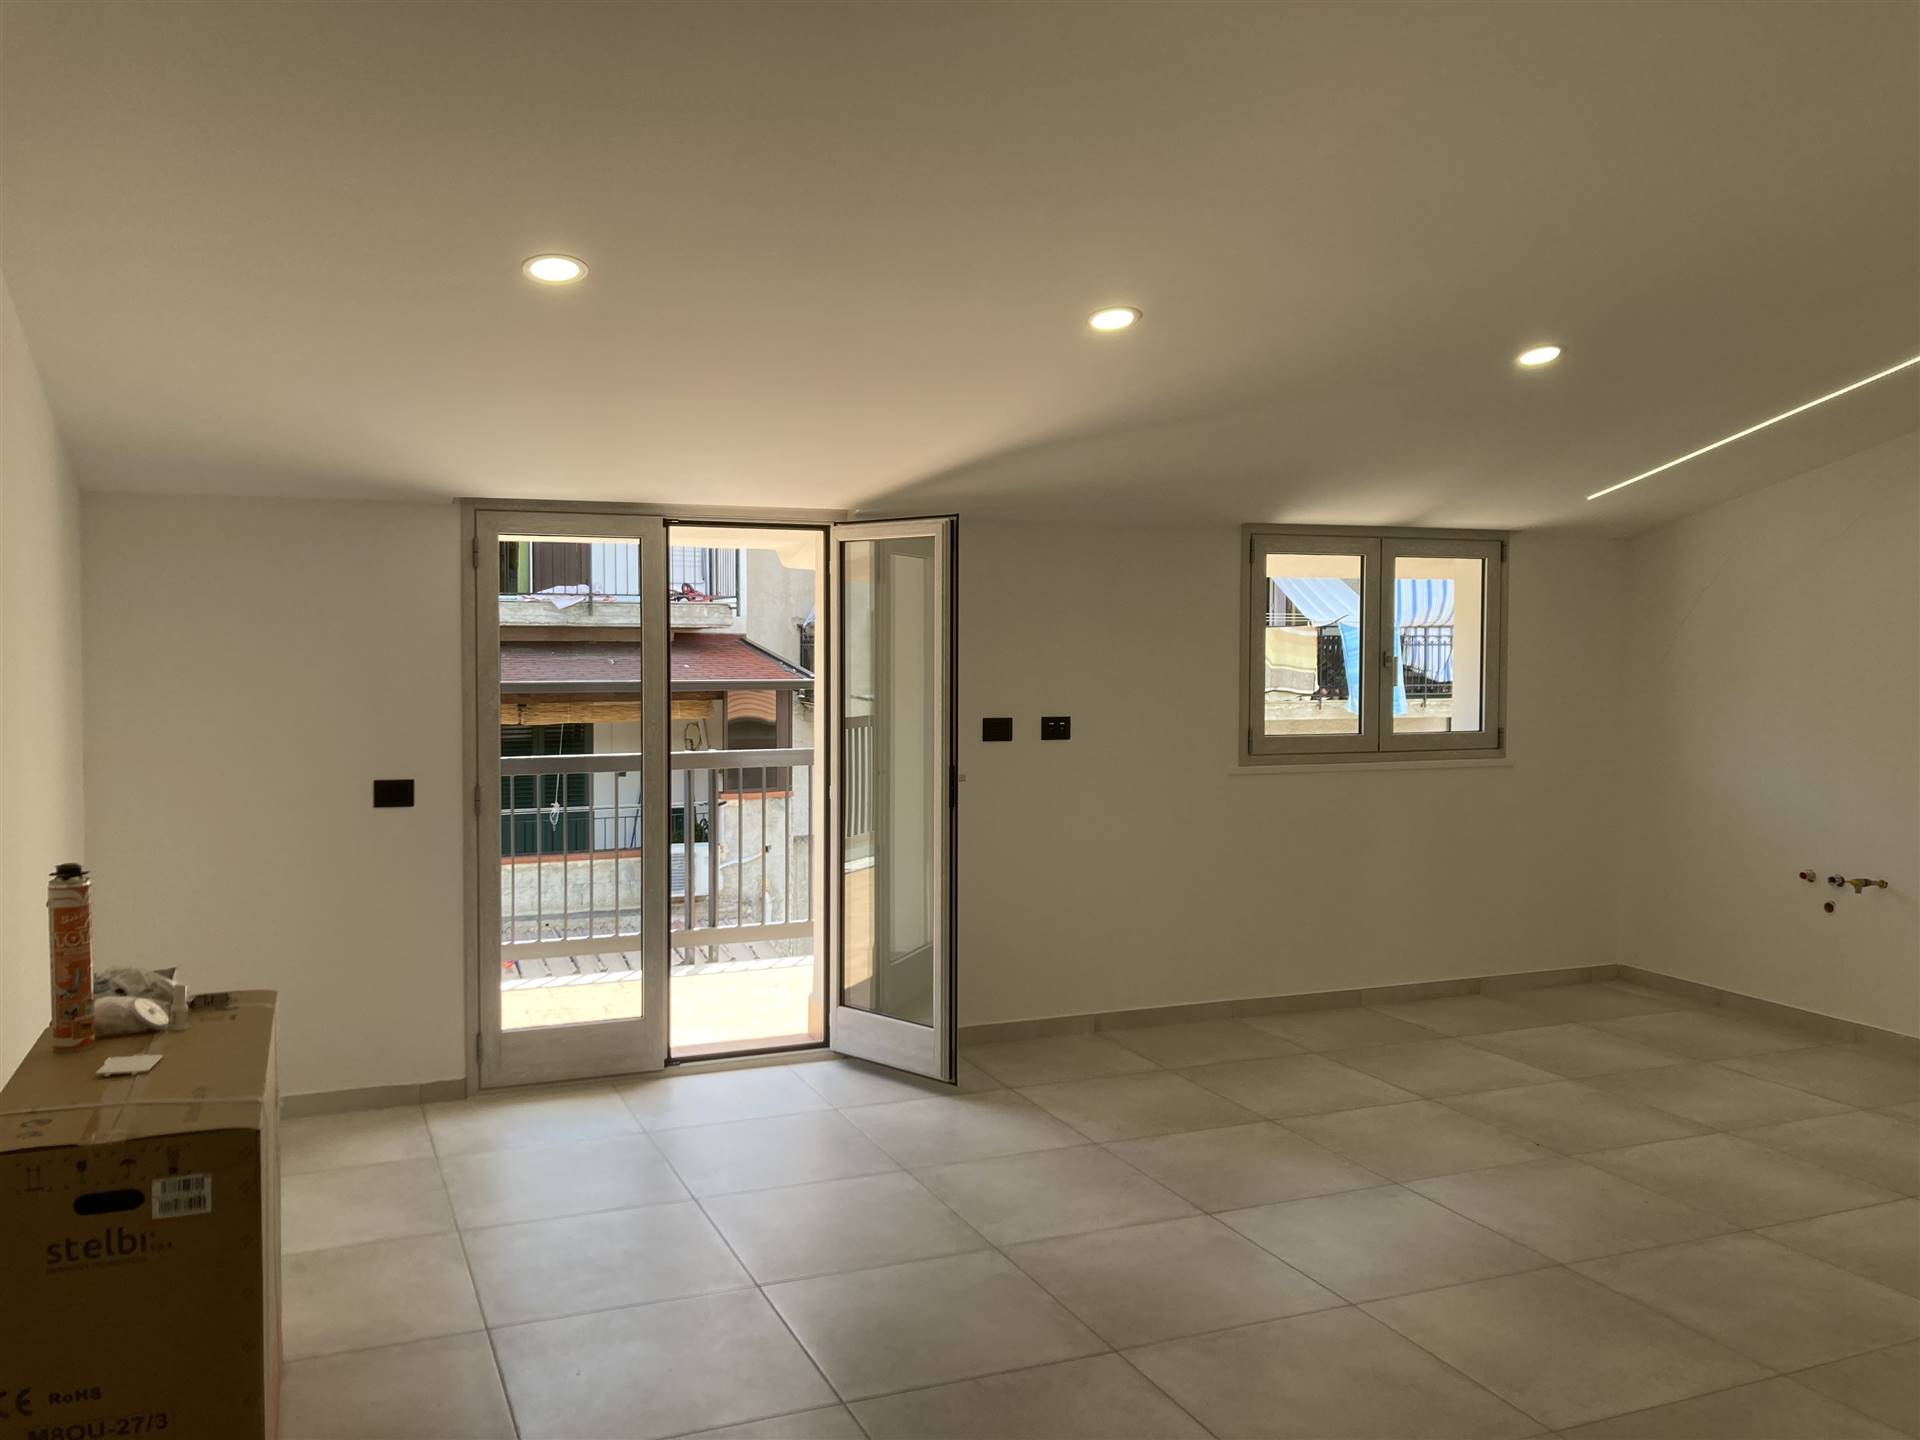 Appartamento in vendita a Altofonte, 3 locali, prezzo € 97.000 | CambioCasa.it